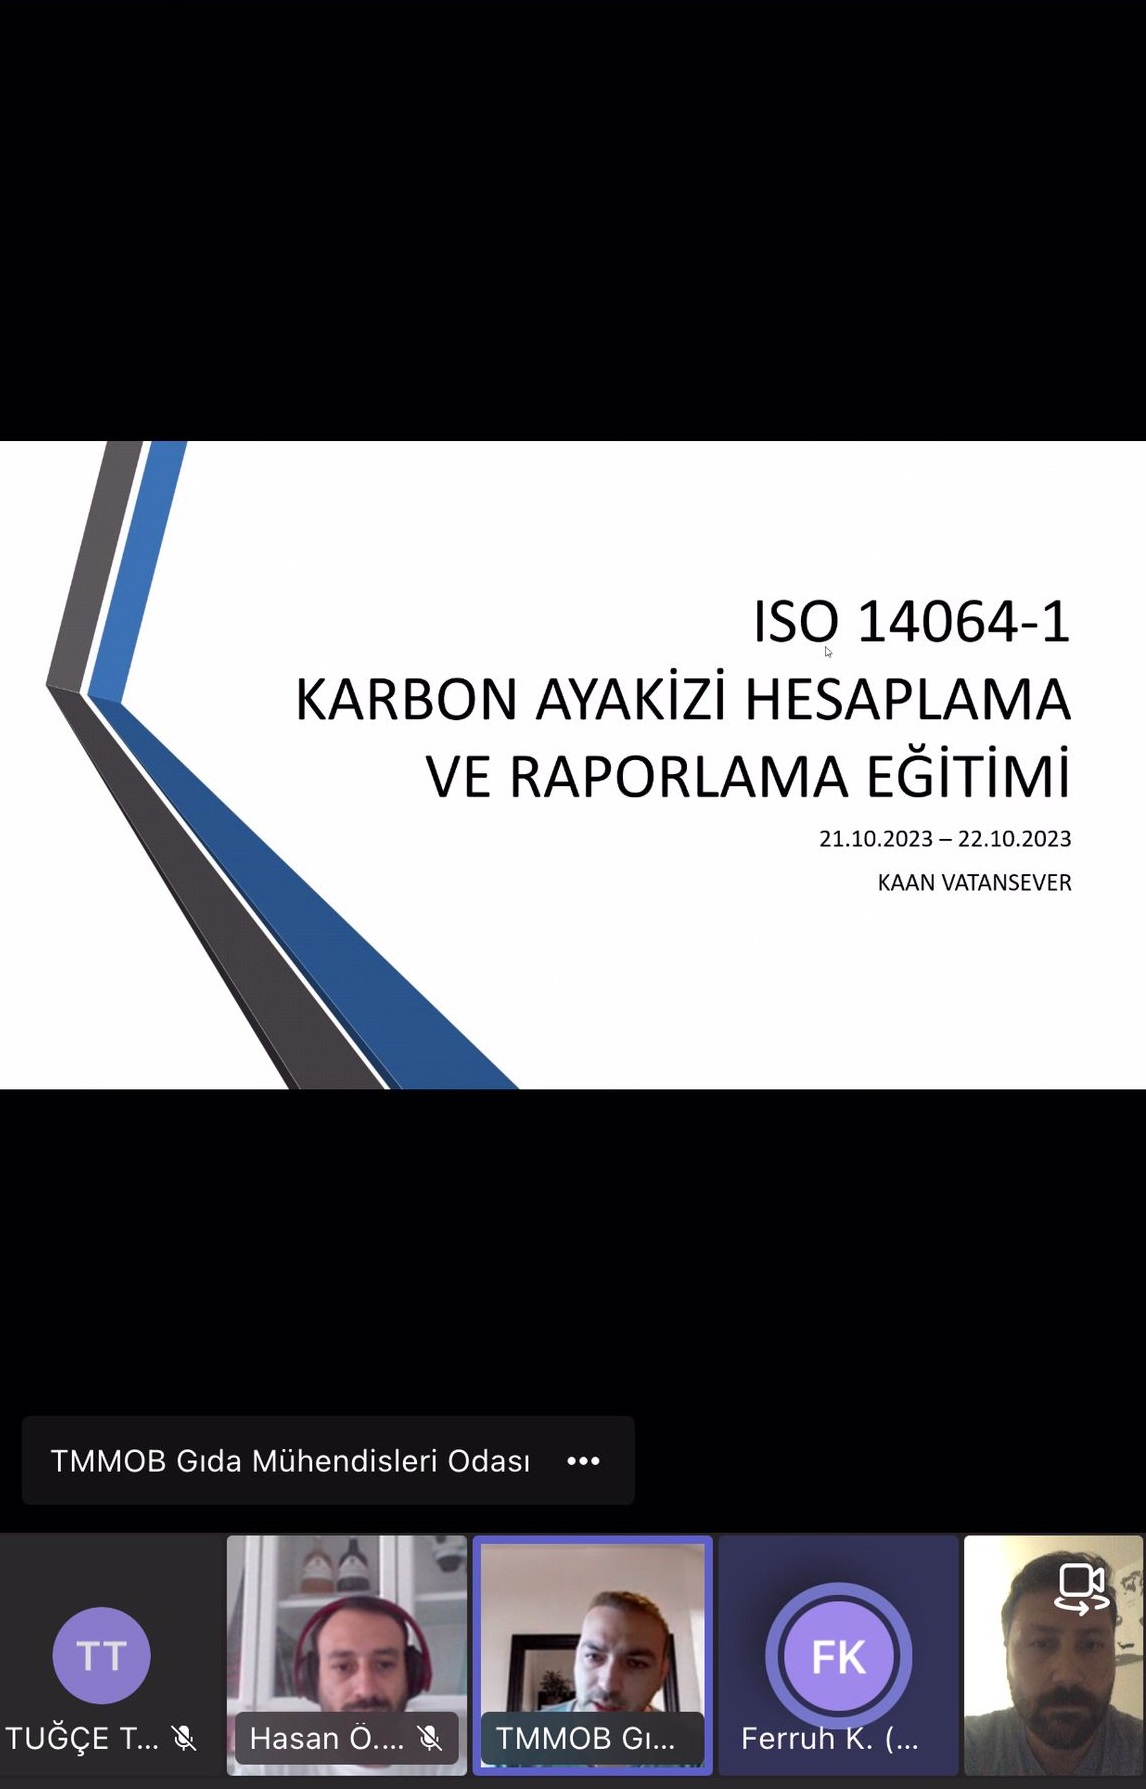 ONLİNE ISO 14064-1 2018 KARBON AYAK İZİ HESAPLAMA VE RAPORLAMA EĞİTİMİ GERÇEKLEŞTİRDİK!